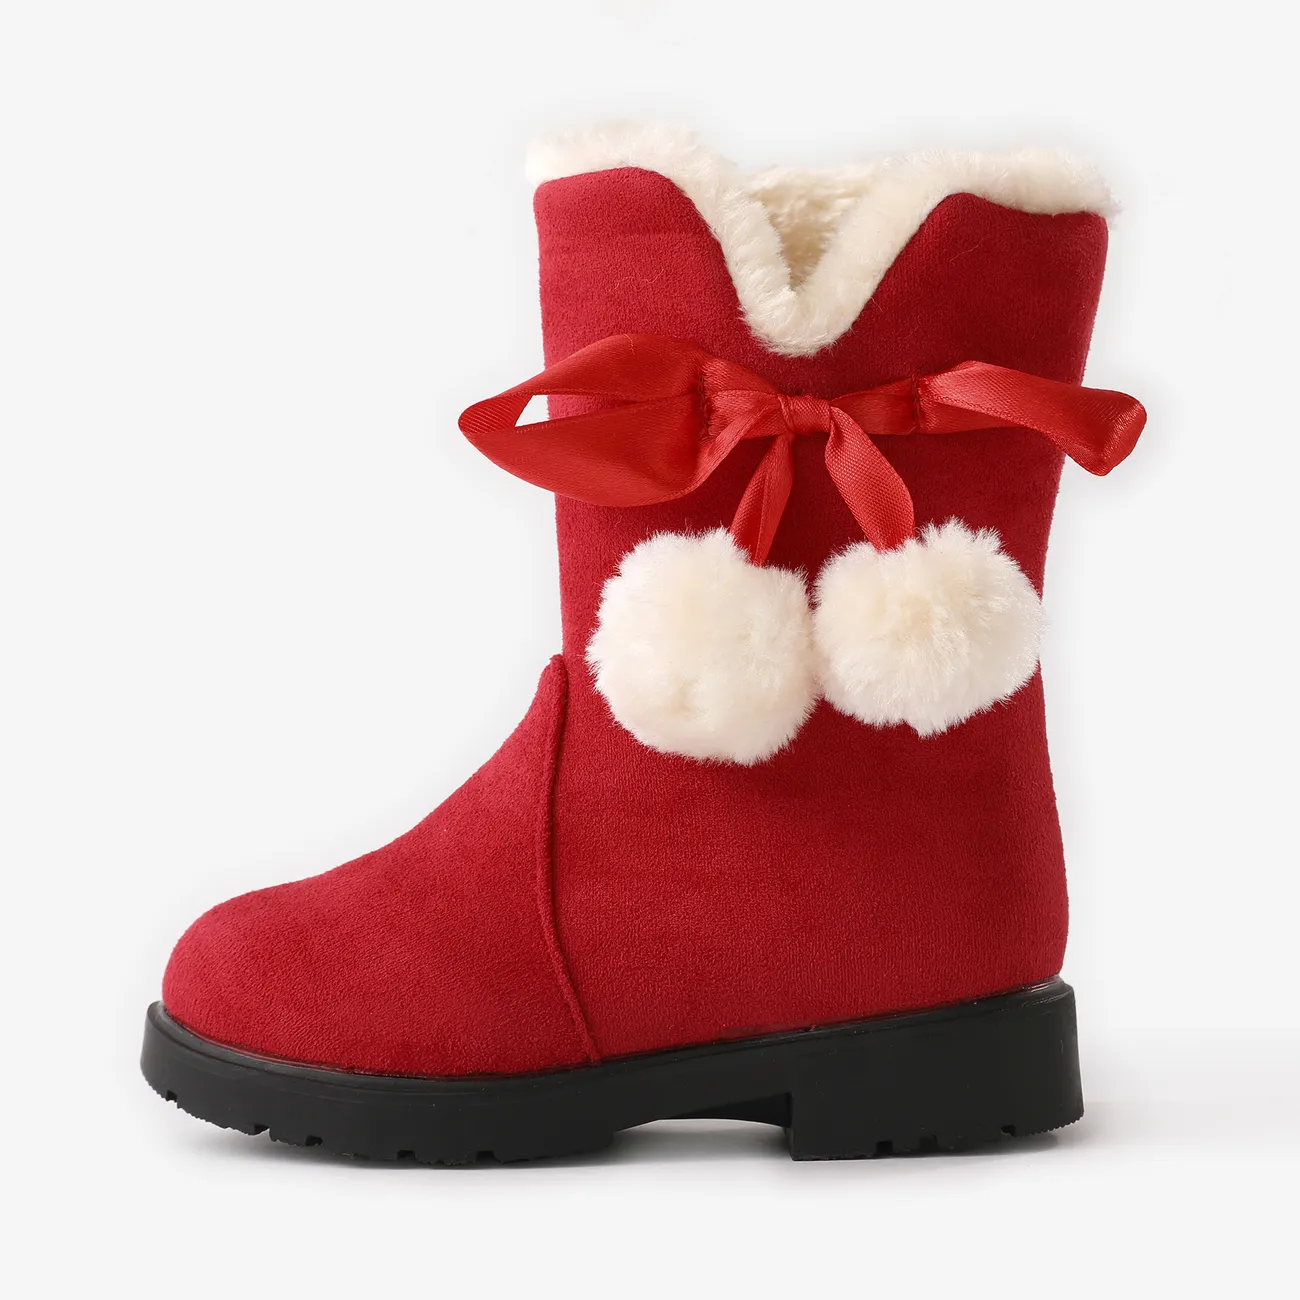 幼兒/孩子聖誕絨球裝飾紅色雪地靴 紅色 big image 1